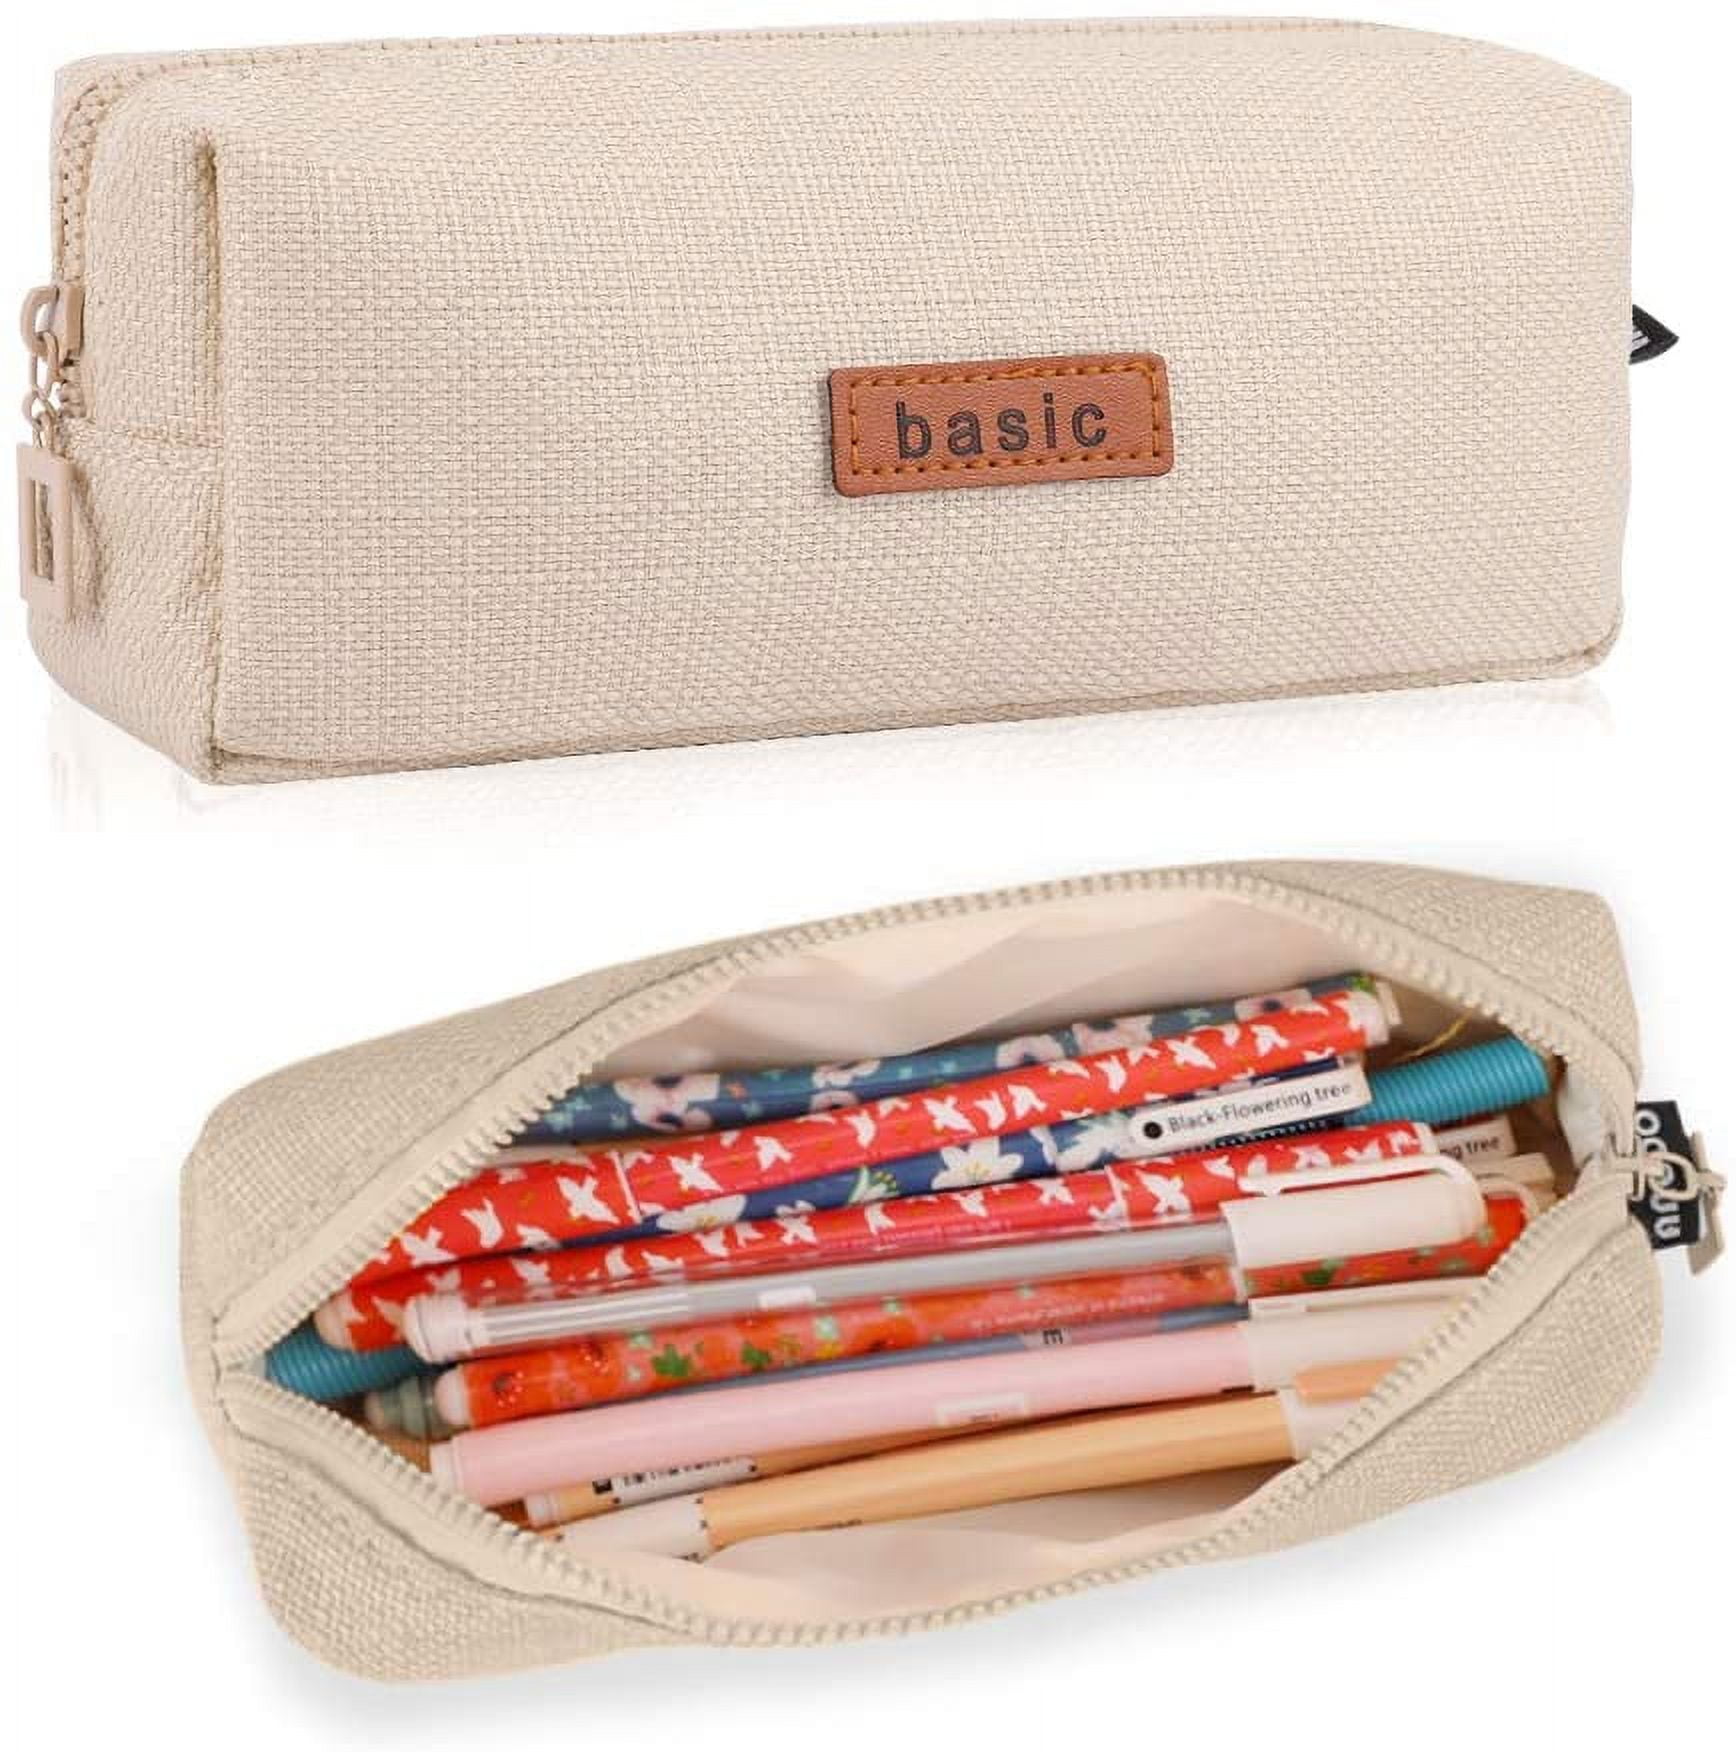  iSuperb Portable Pencil Case Large Capacity Cotton Linen  Organizer Storage Zipper Compartments Pen Bag Pouch Makeup Bag : Office  Products